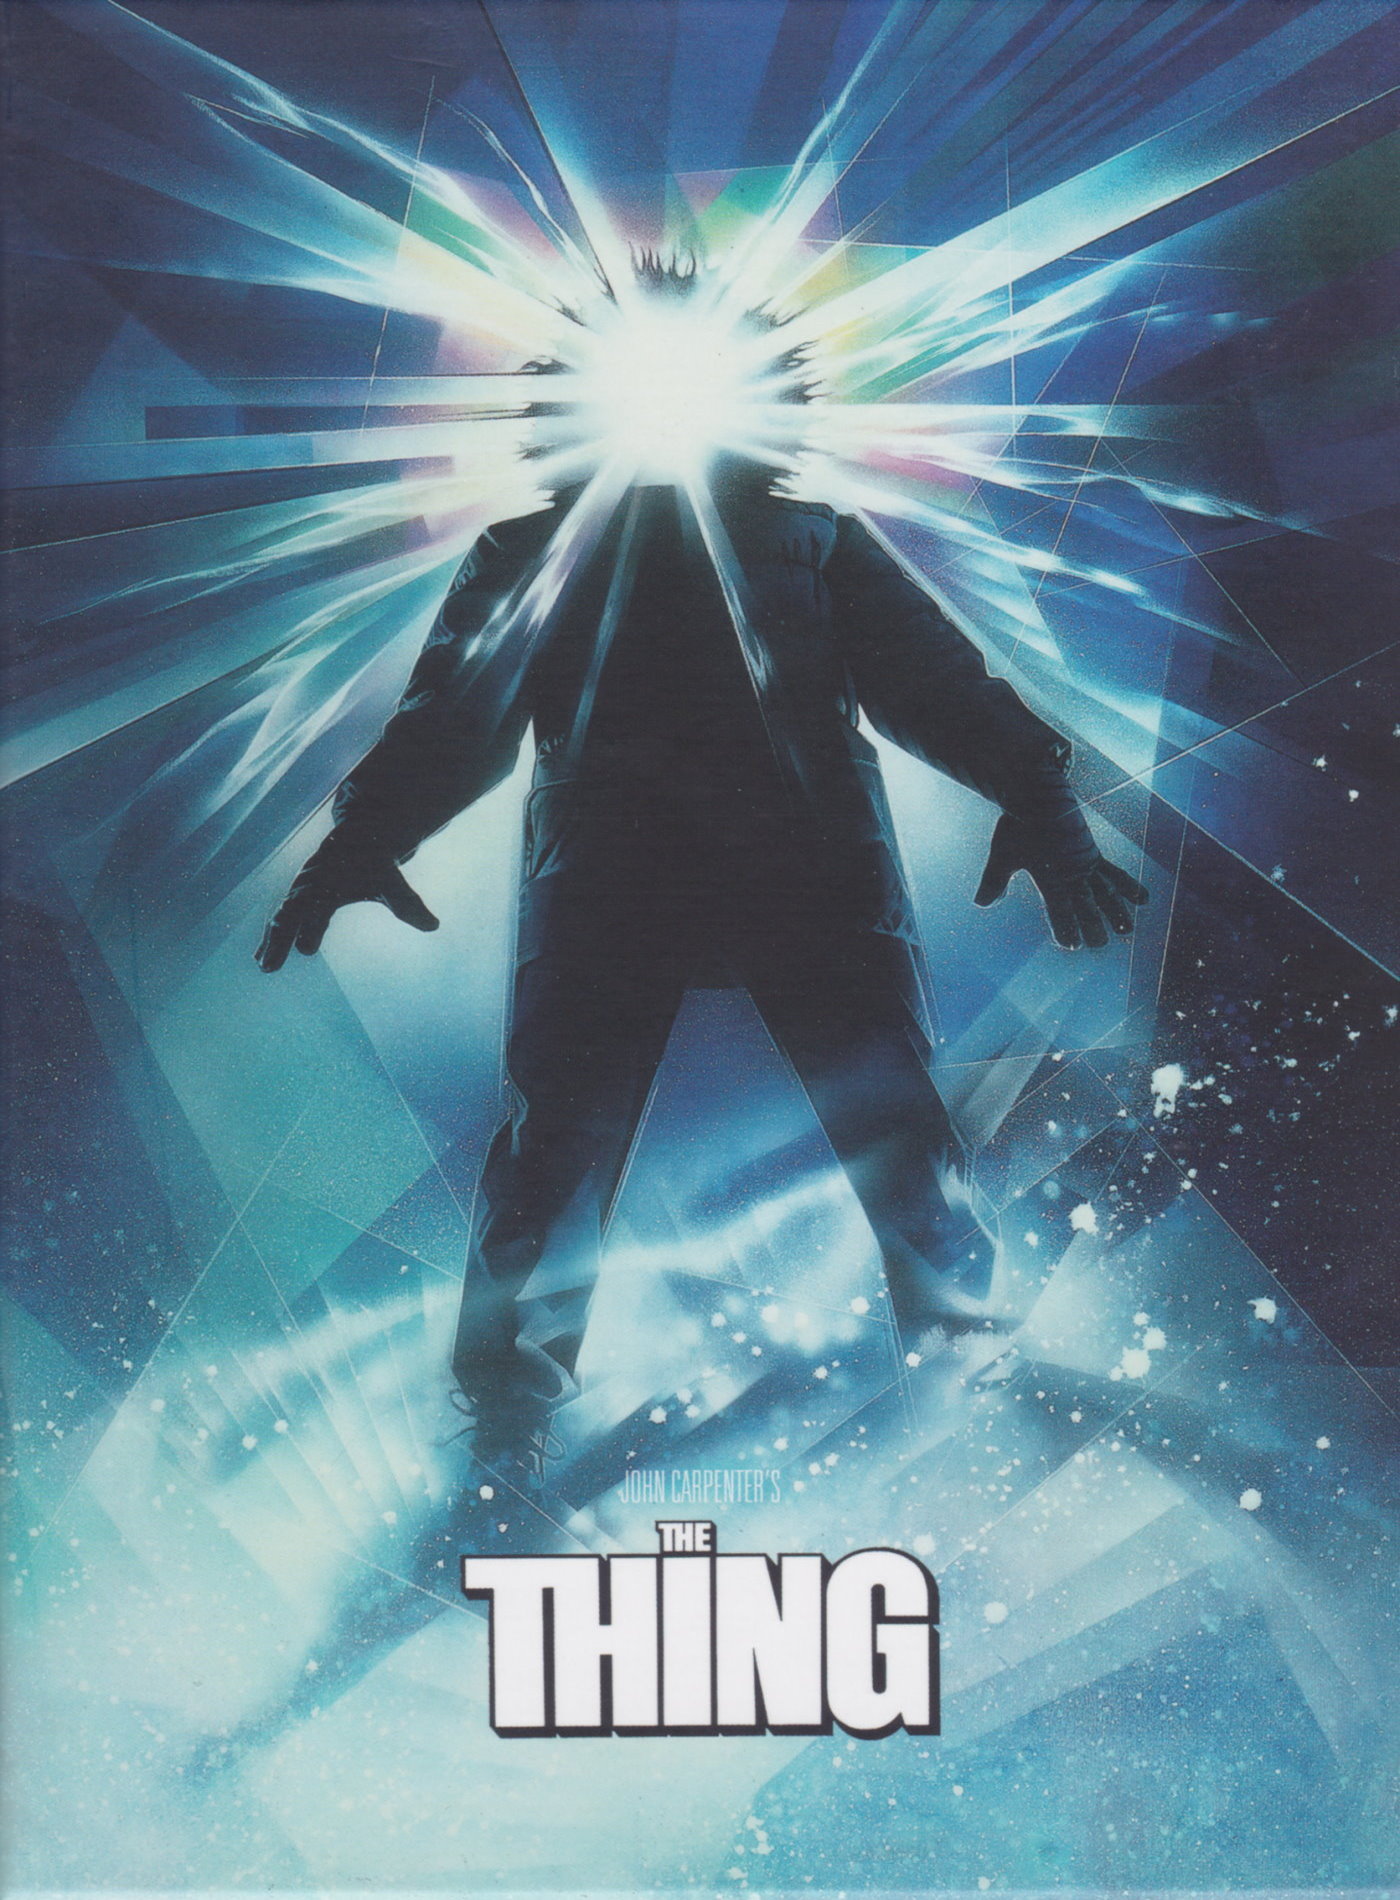 Cover - The Thing - Das Ding aus einer anderen Welt.jpg